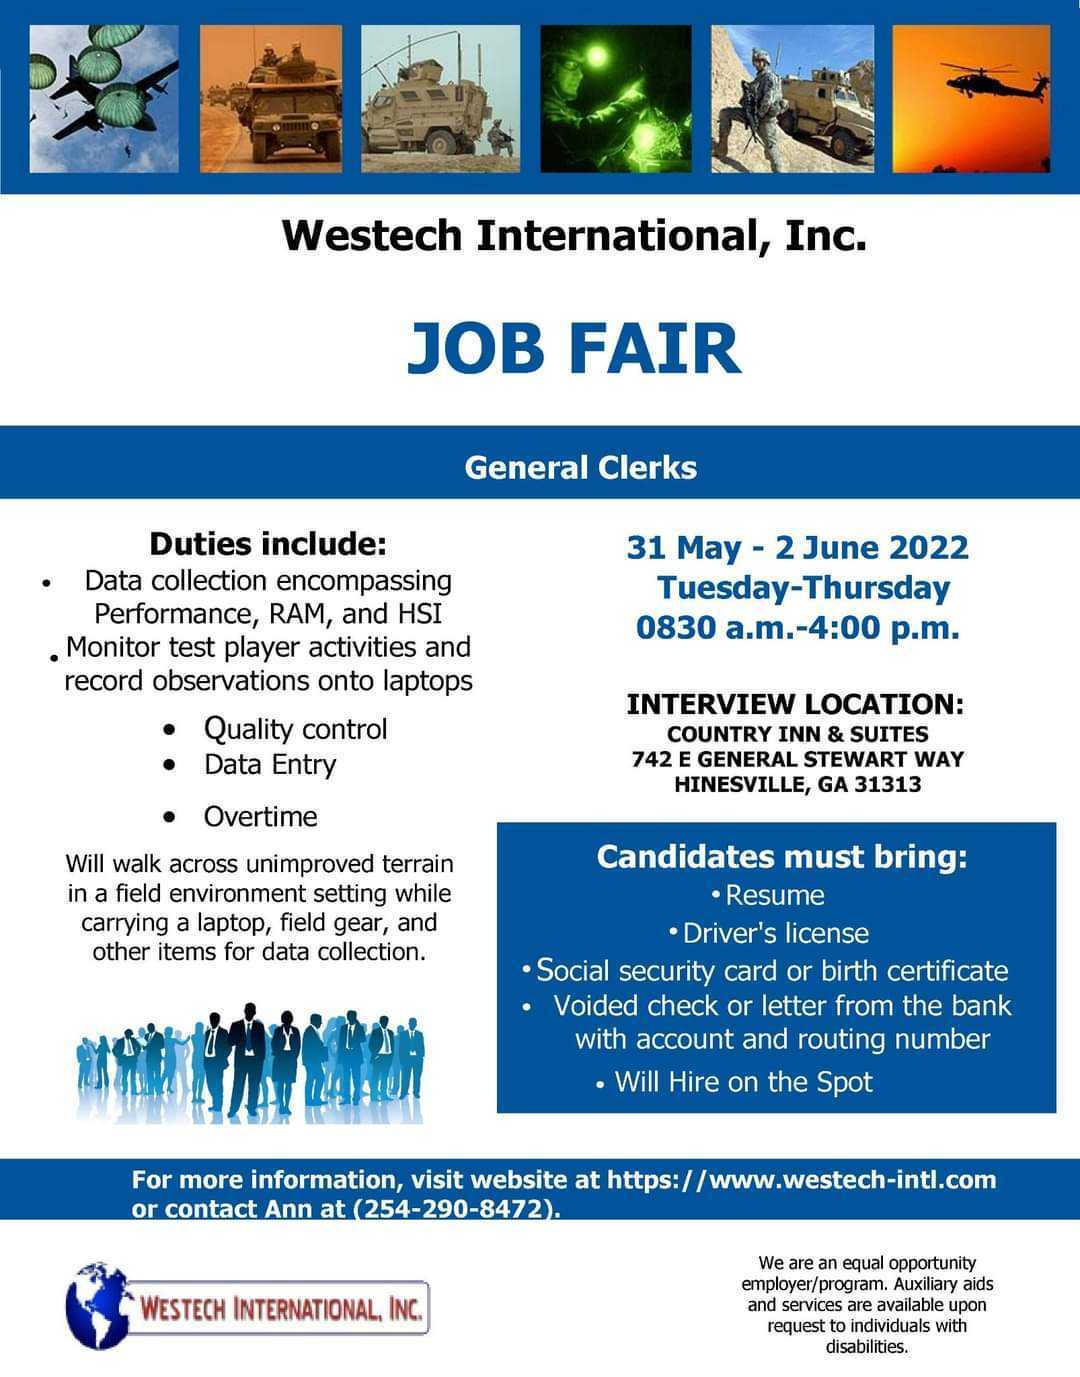 Westech International Inc Job fair flyer